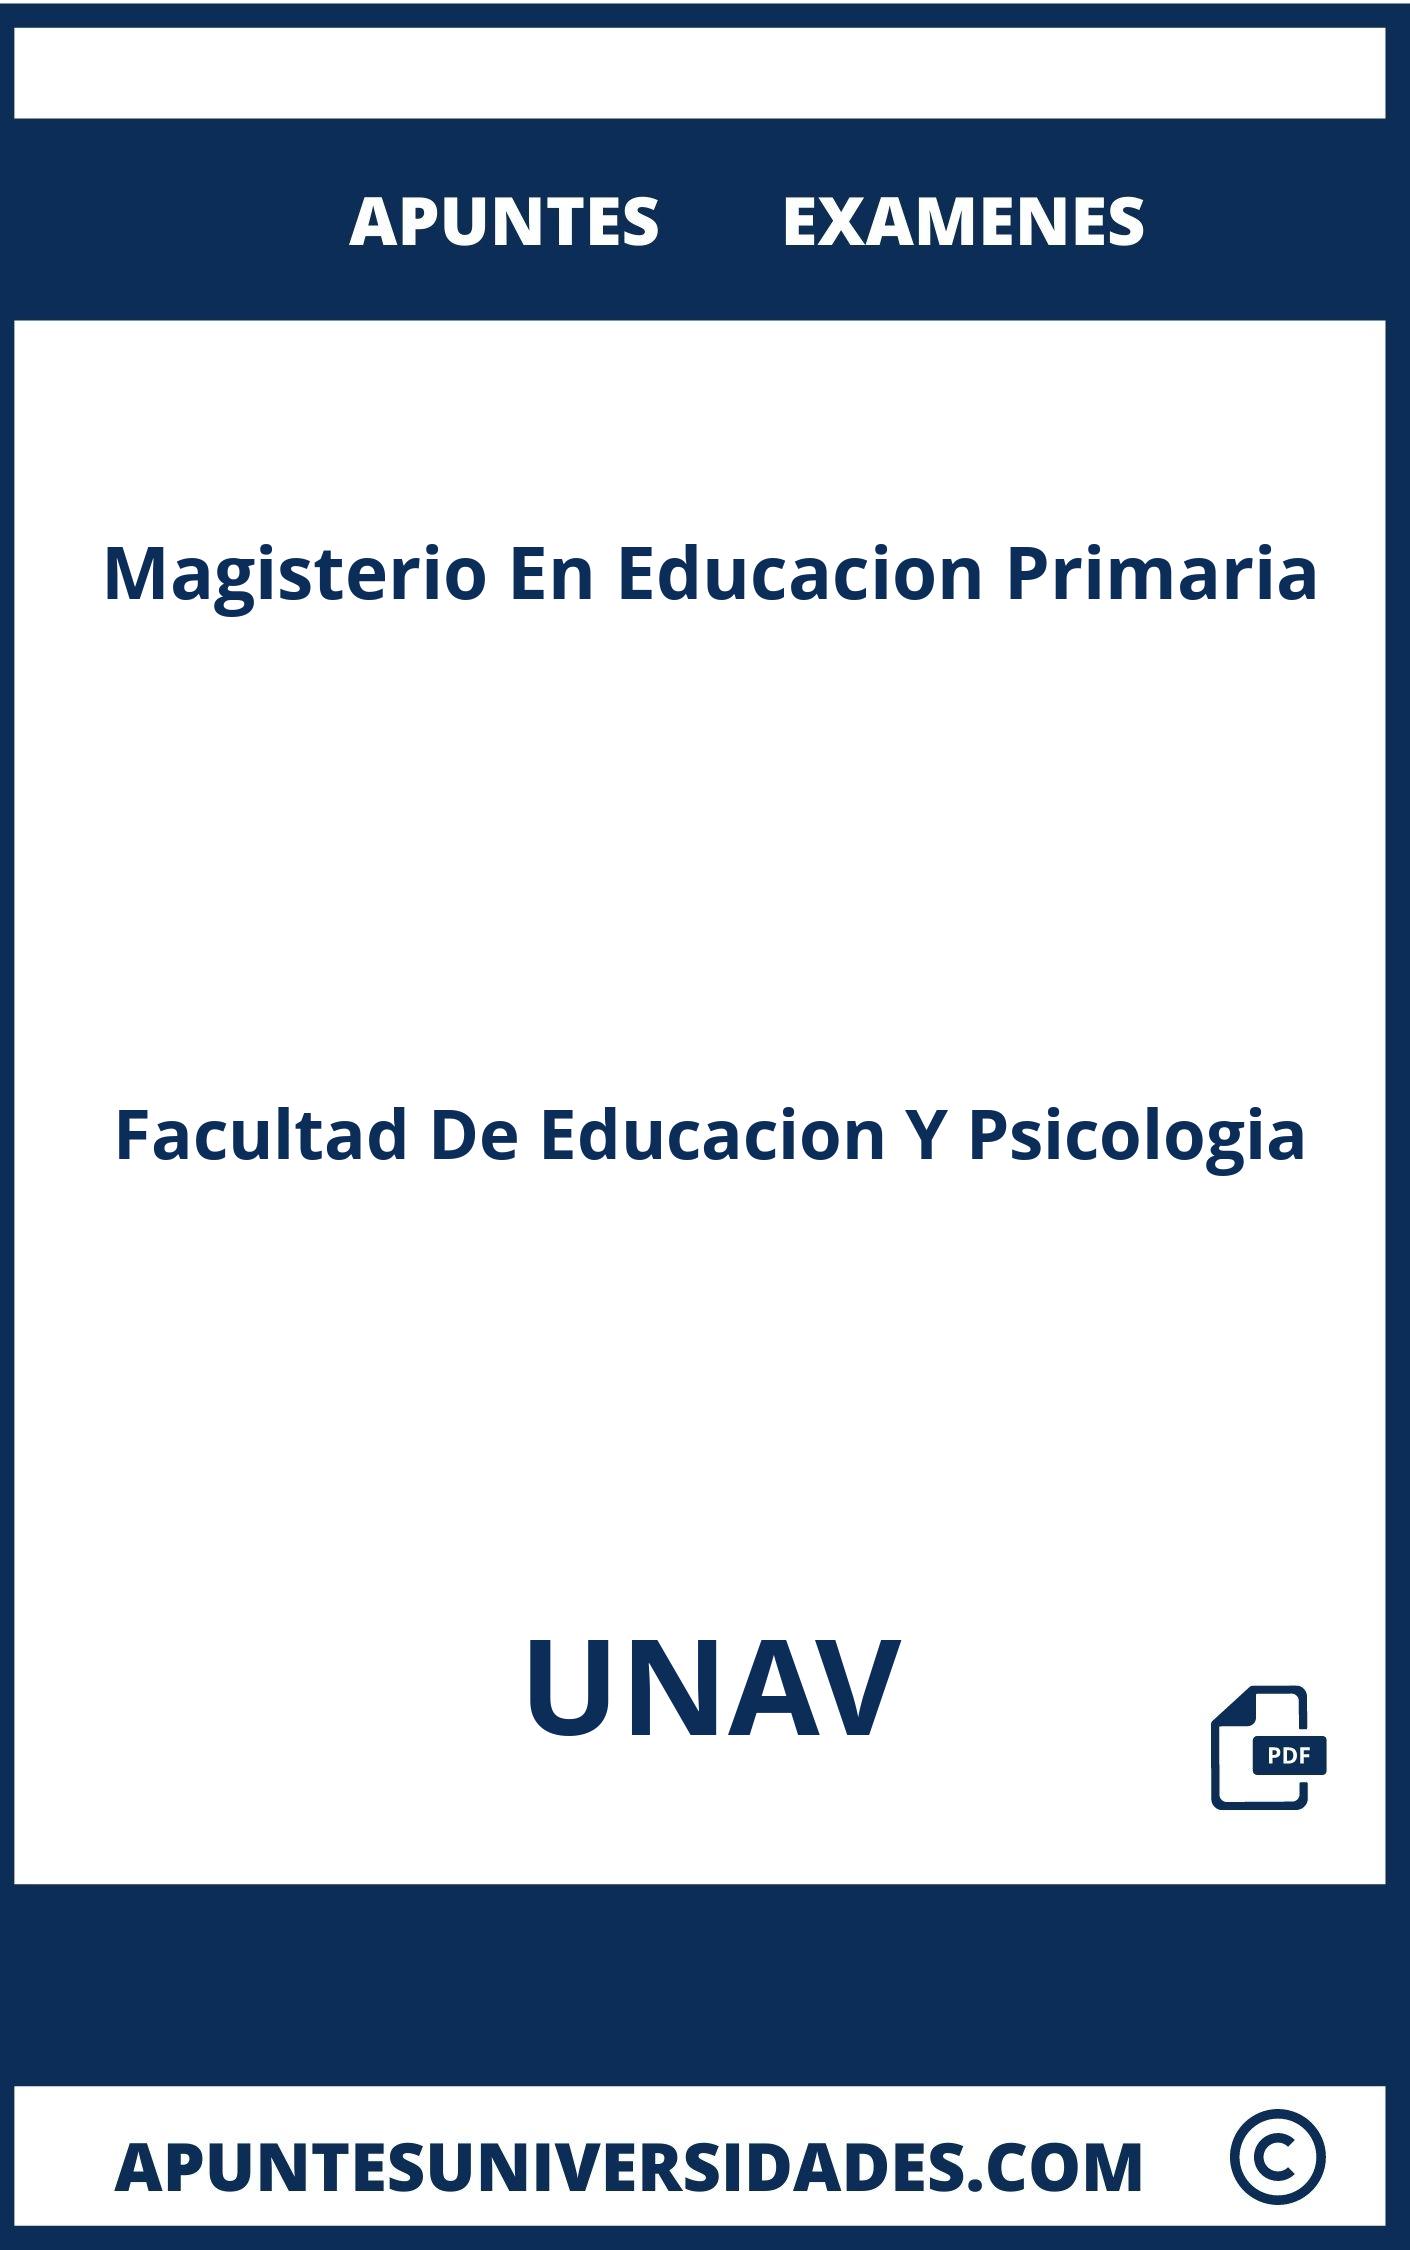 Magisterio En Educacion Primaria UNAV Apuntes Examenes